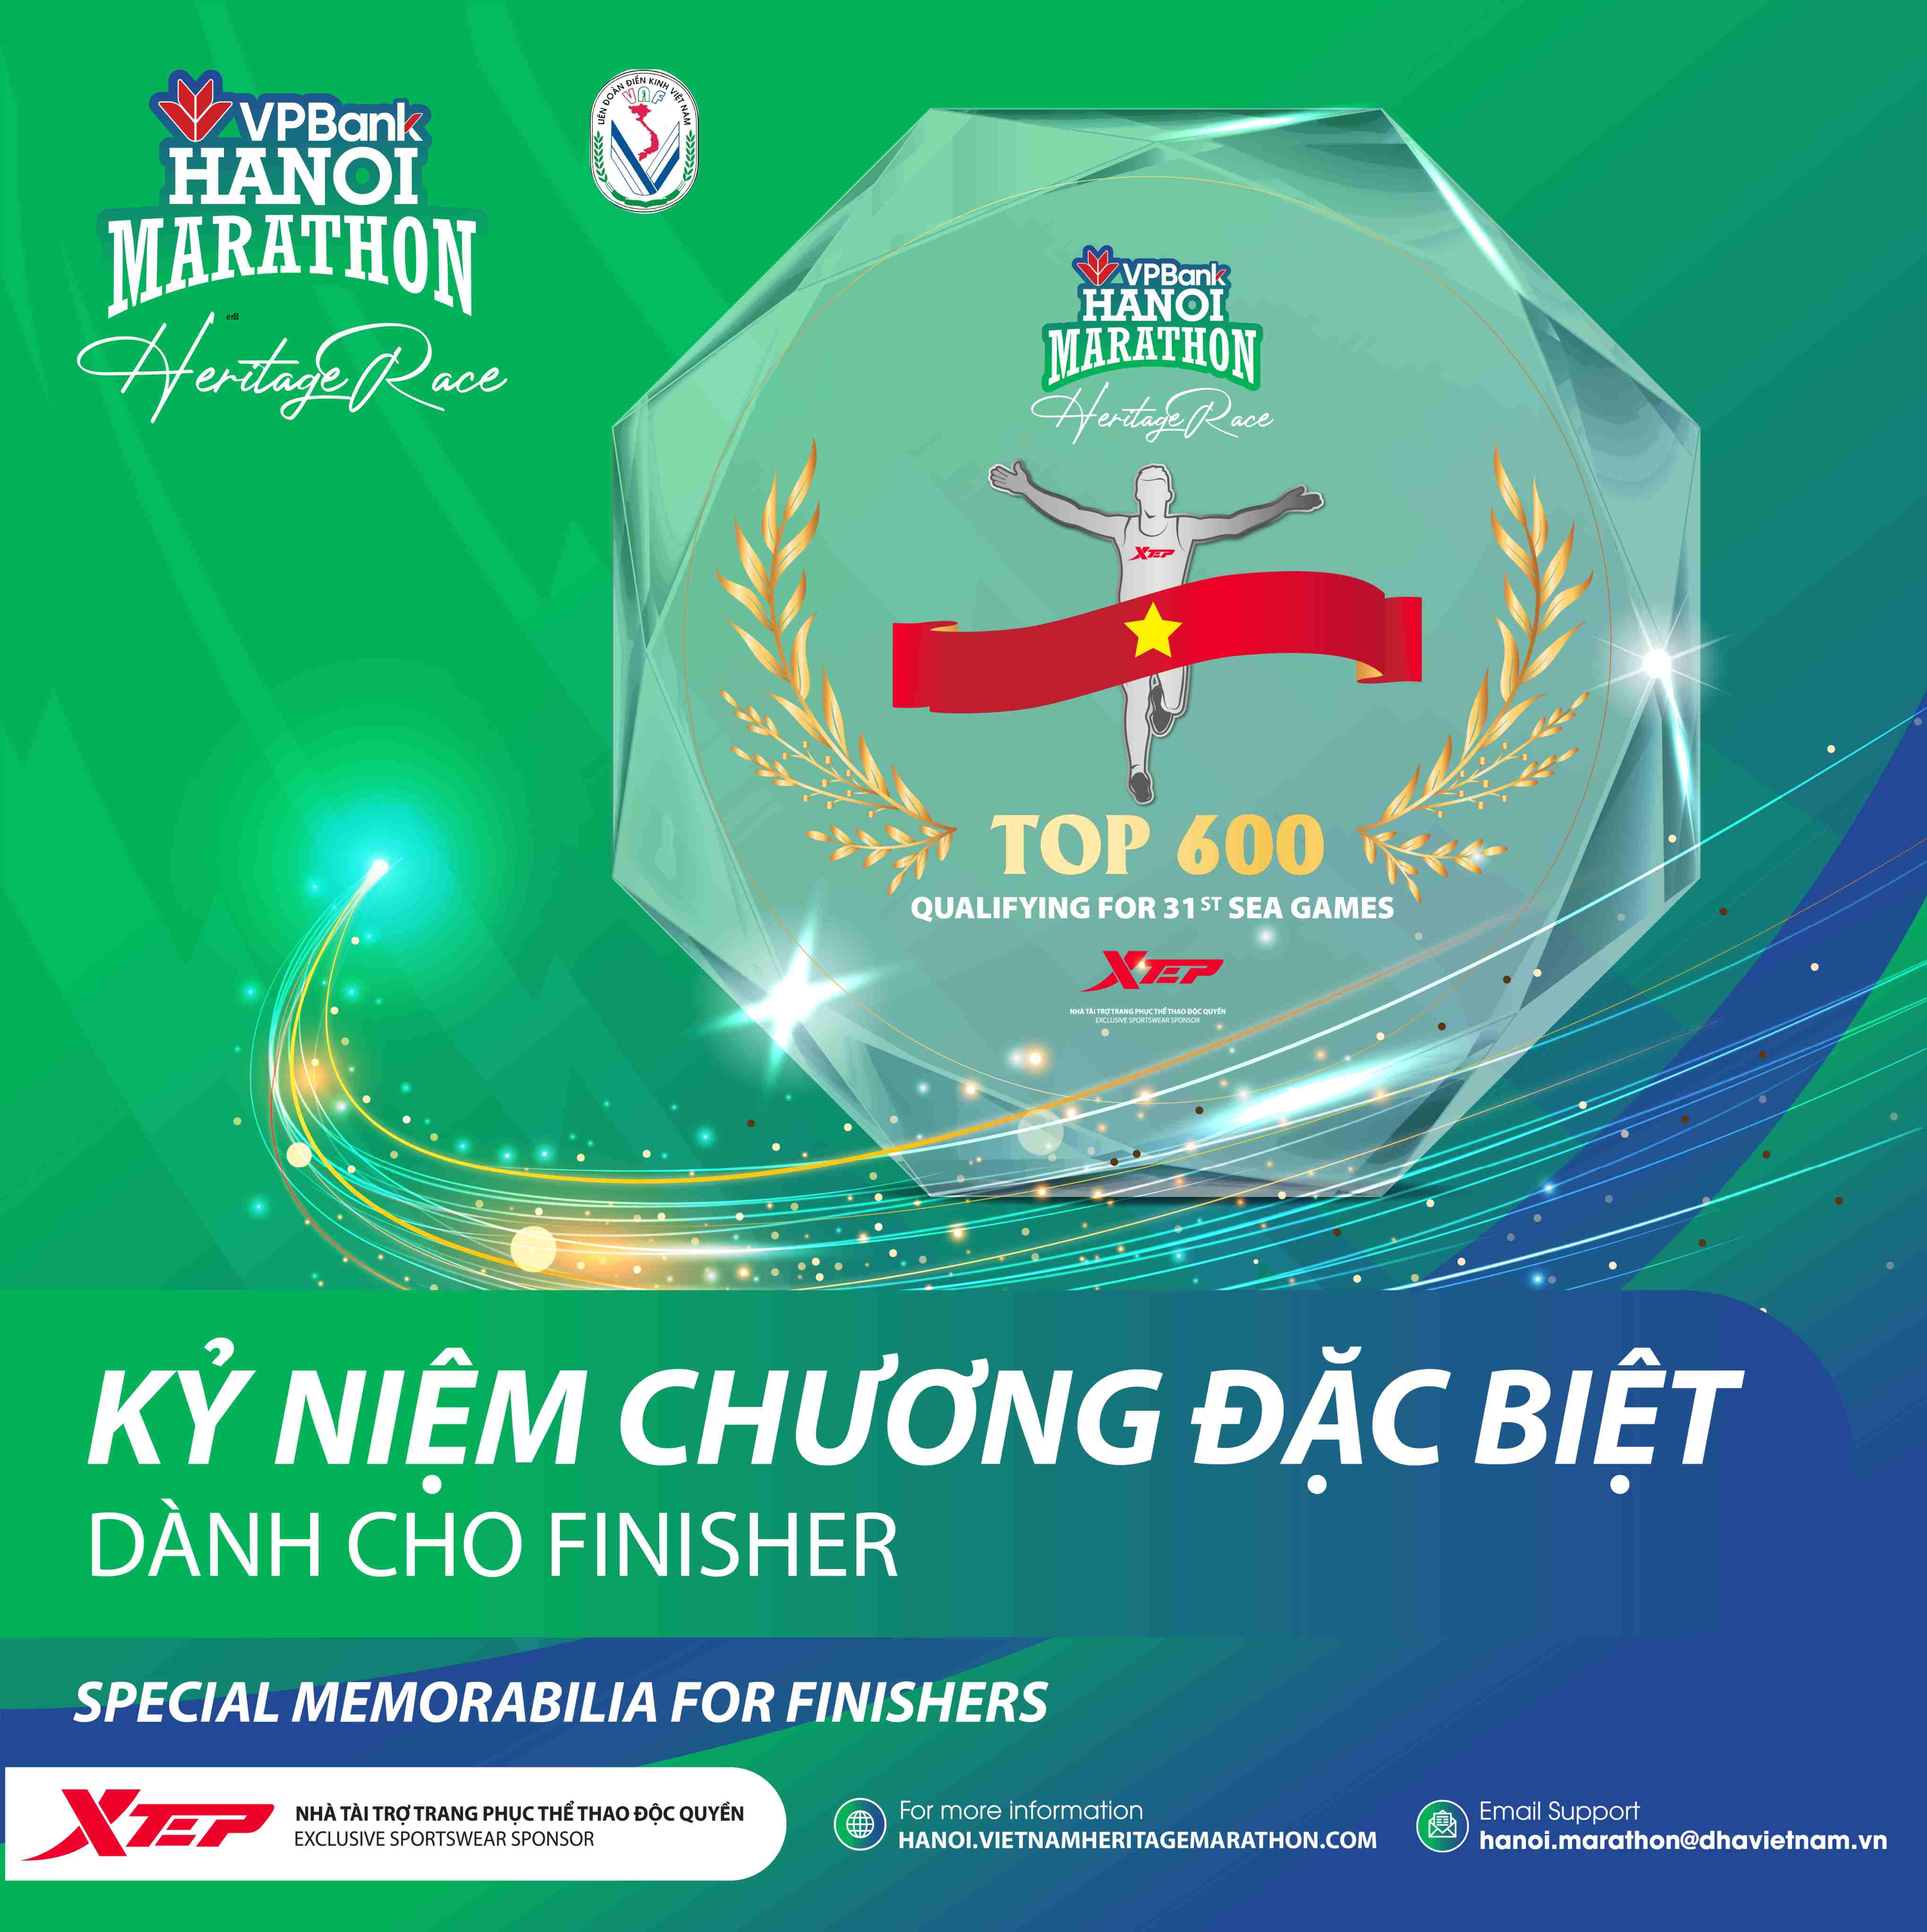 VPBank Hanoi Marathon Lần Đầu Có Kỷ Niệm Chương Cho Finishers